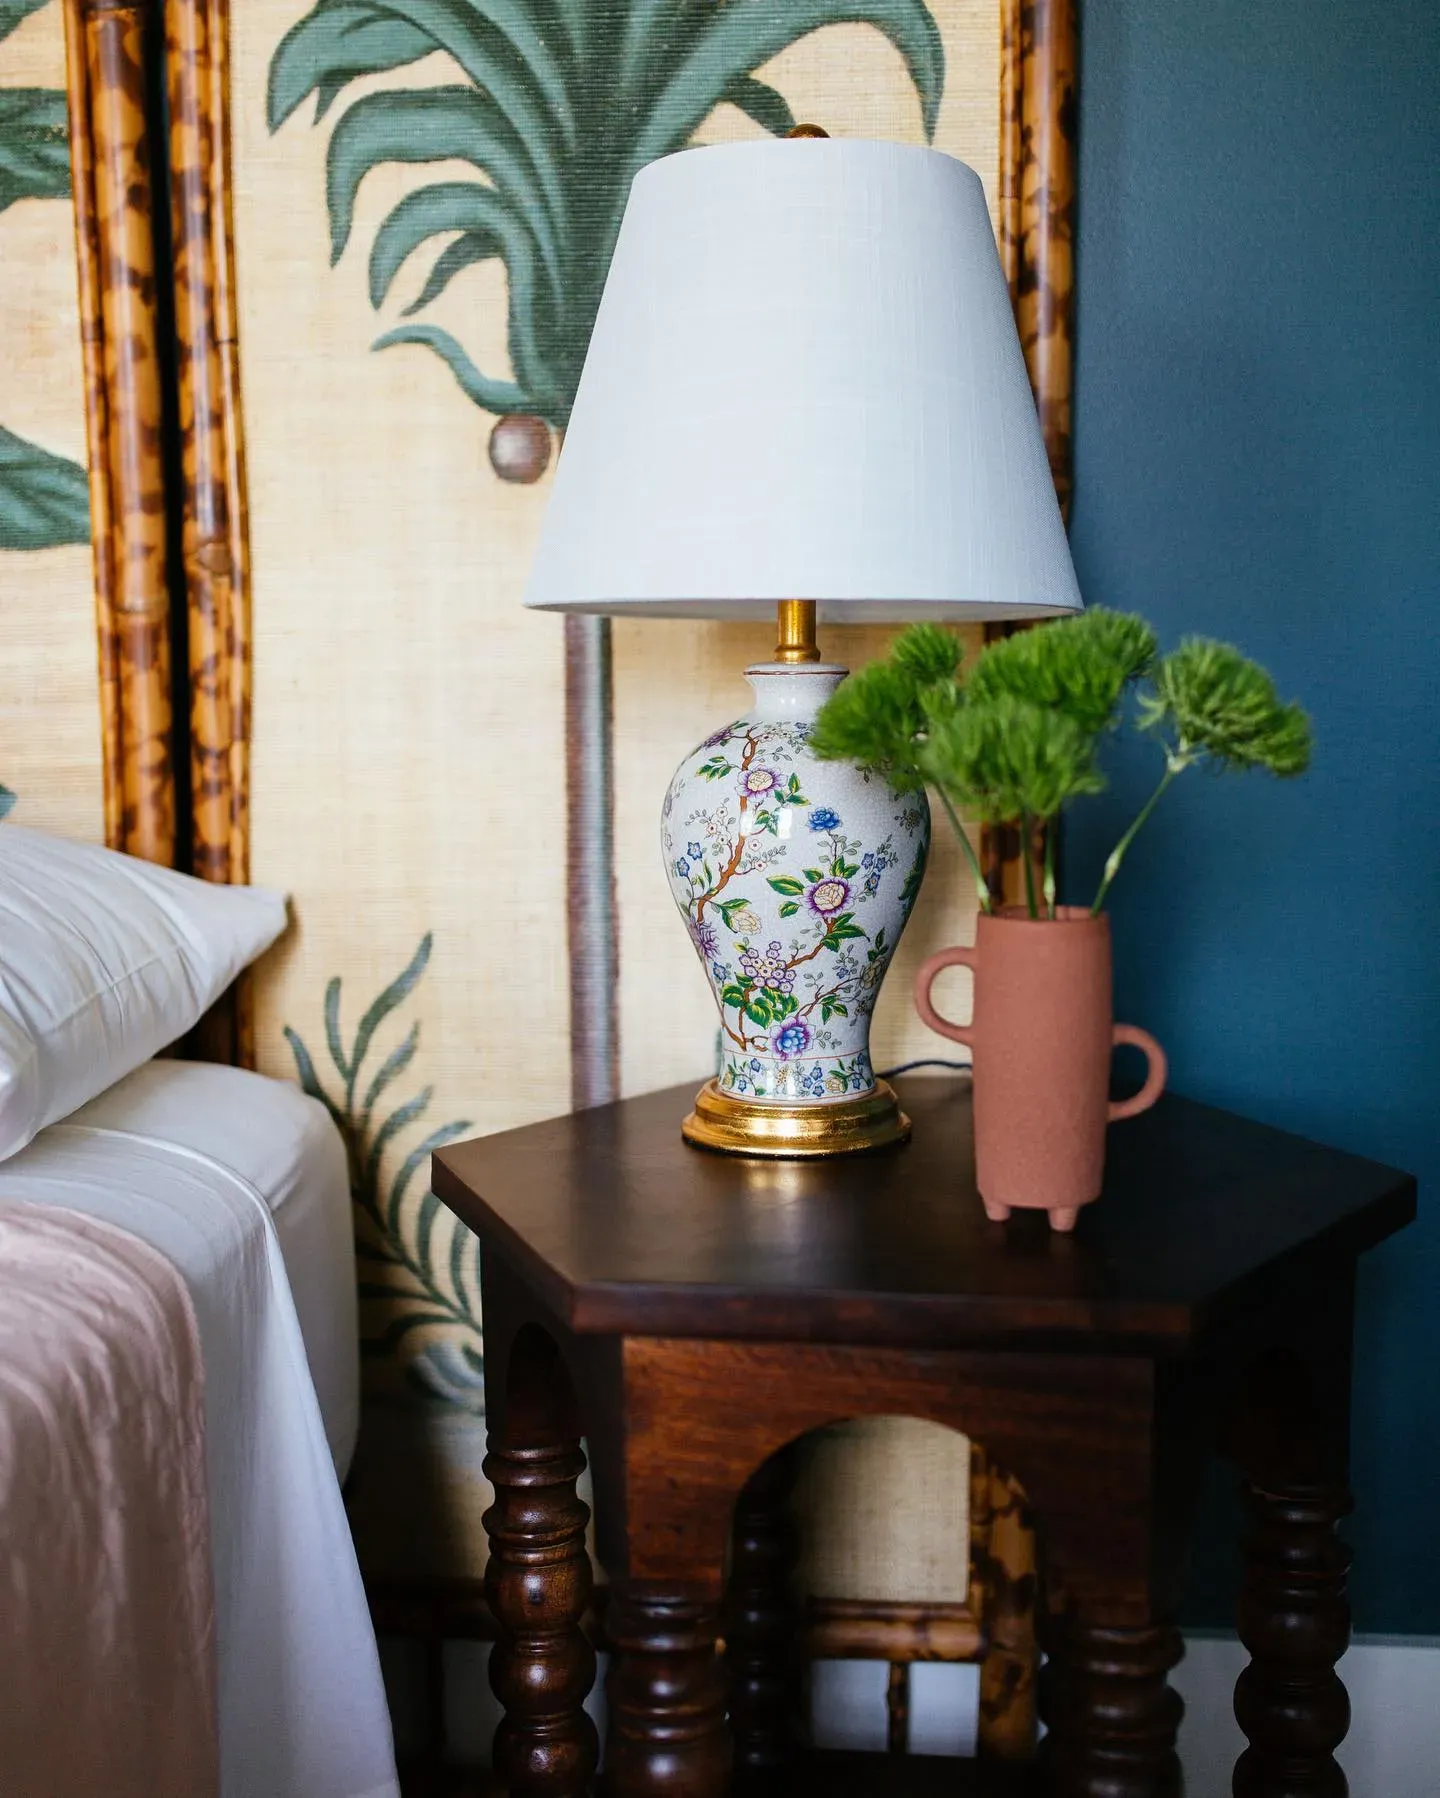 Behr Juniper Berries bedroom color review